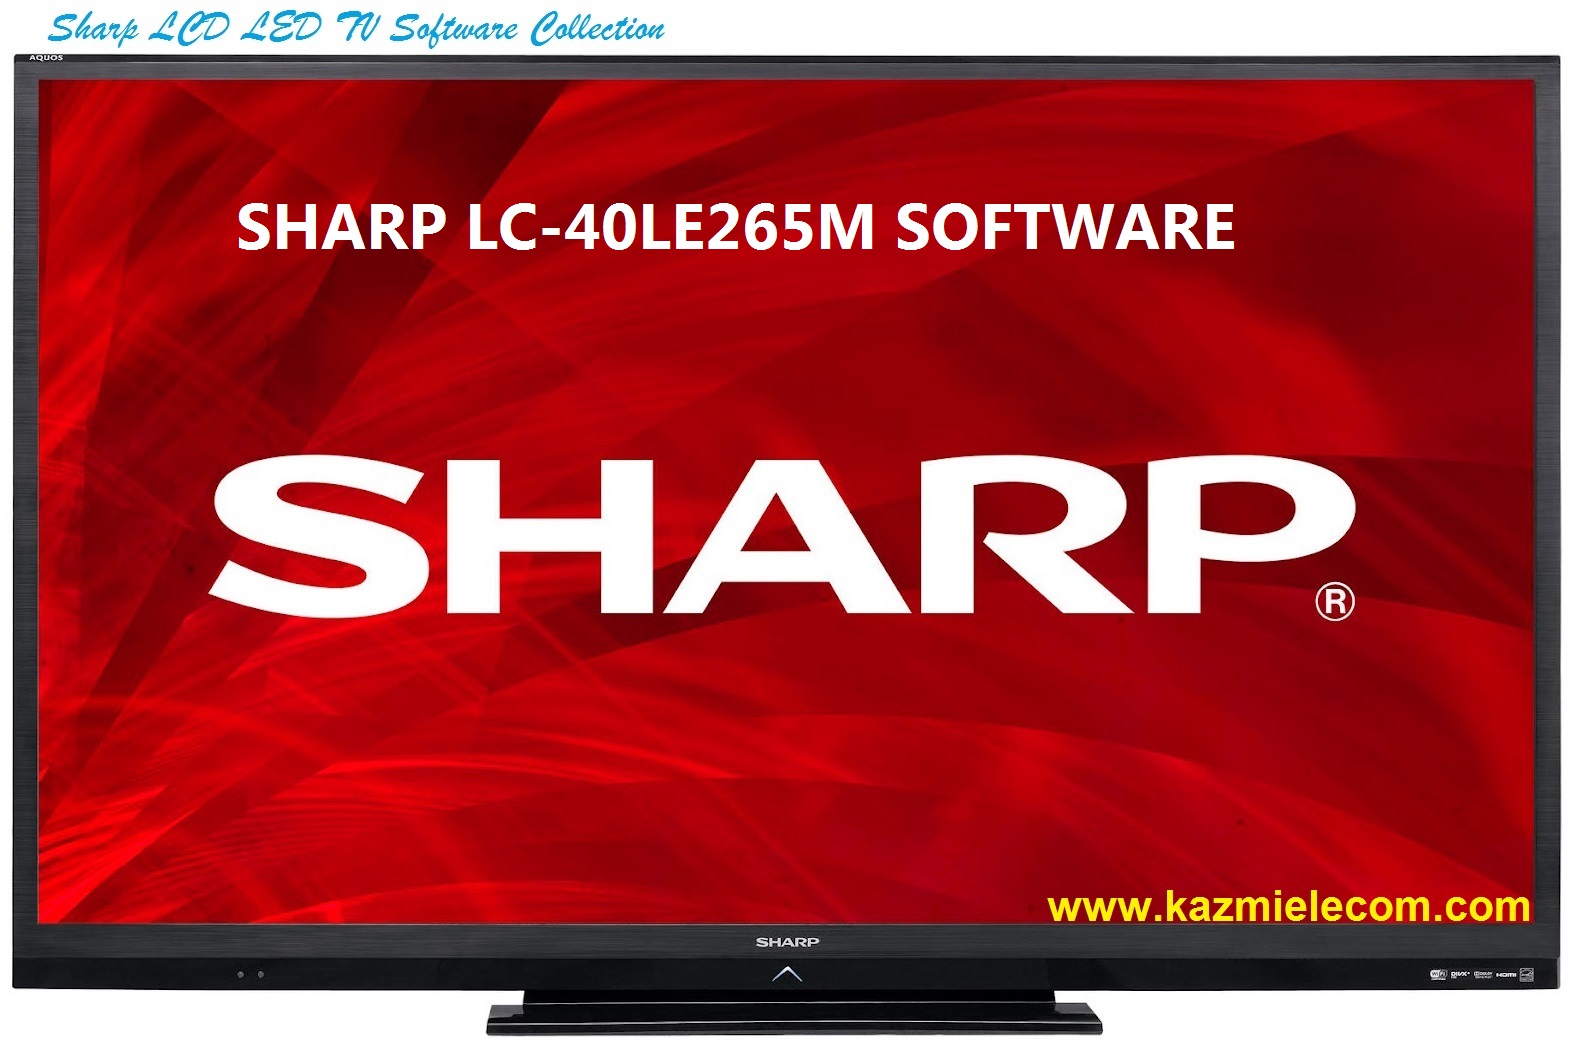 Sharp Lc-40Le265M